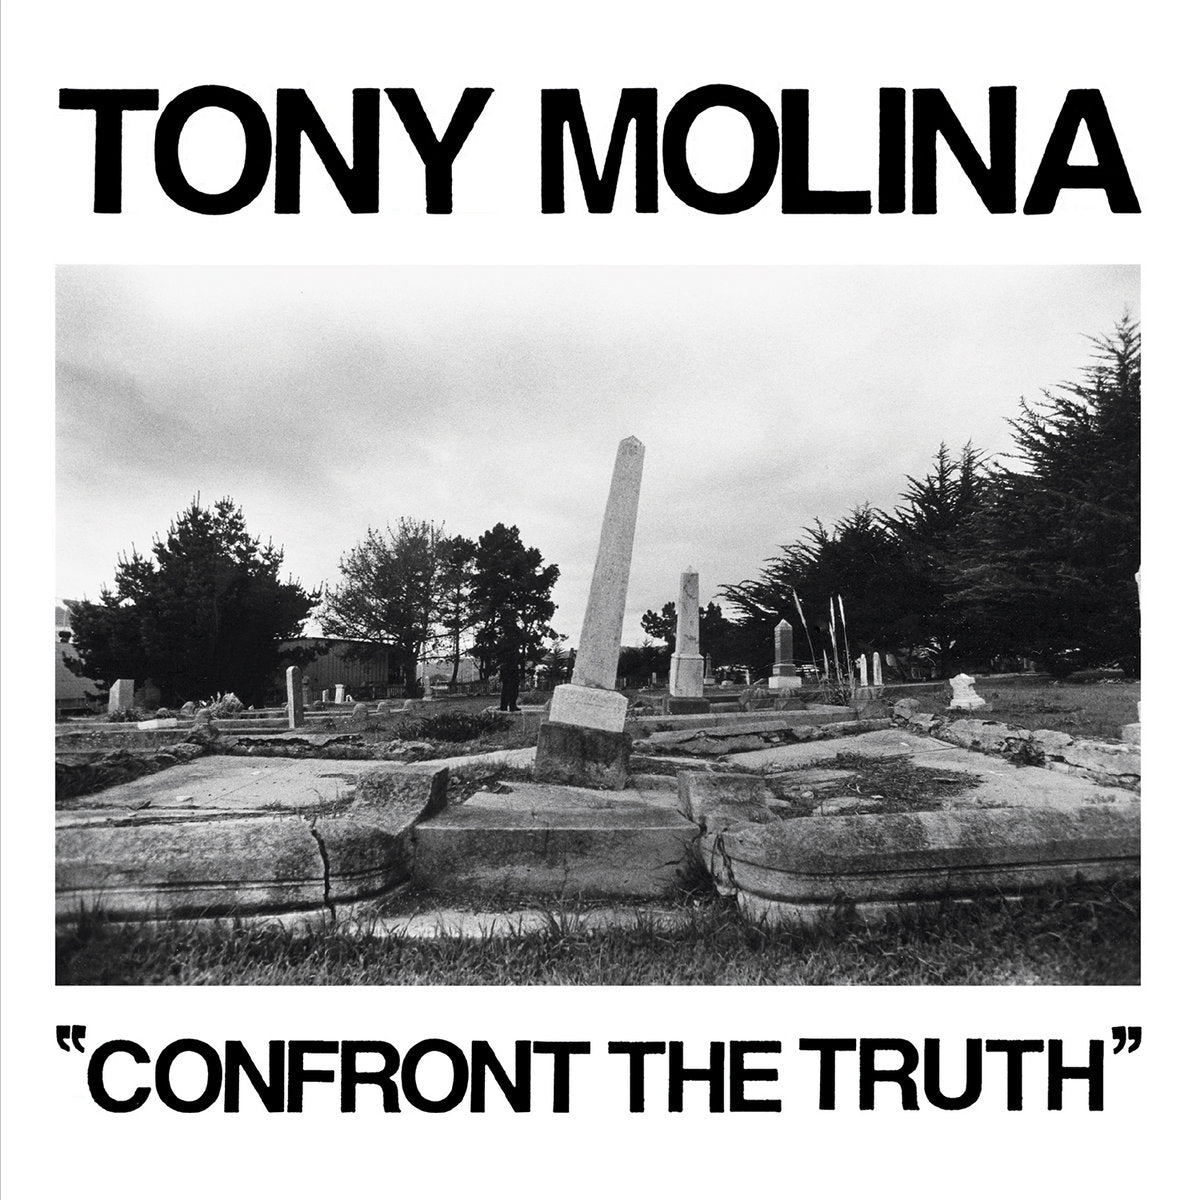 TONY MOLINA - Confront The Truth - LP (12") - Vinyl